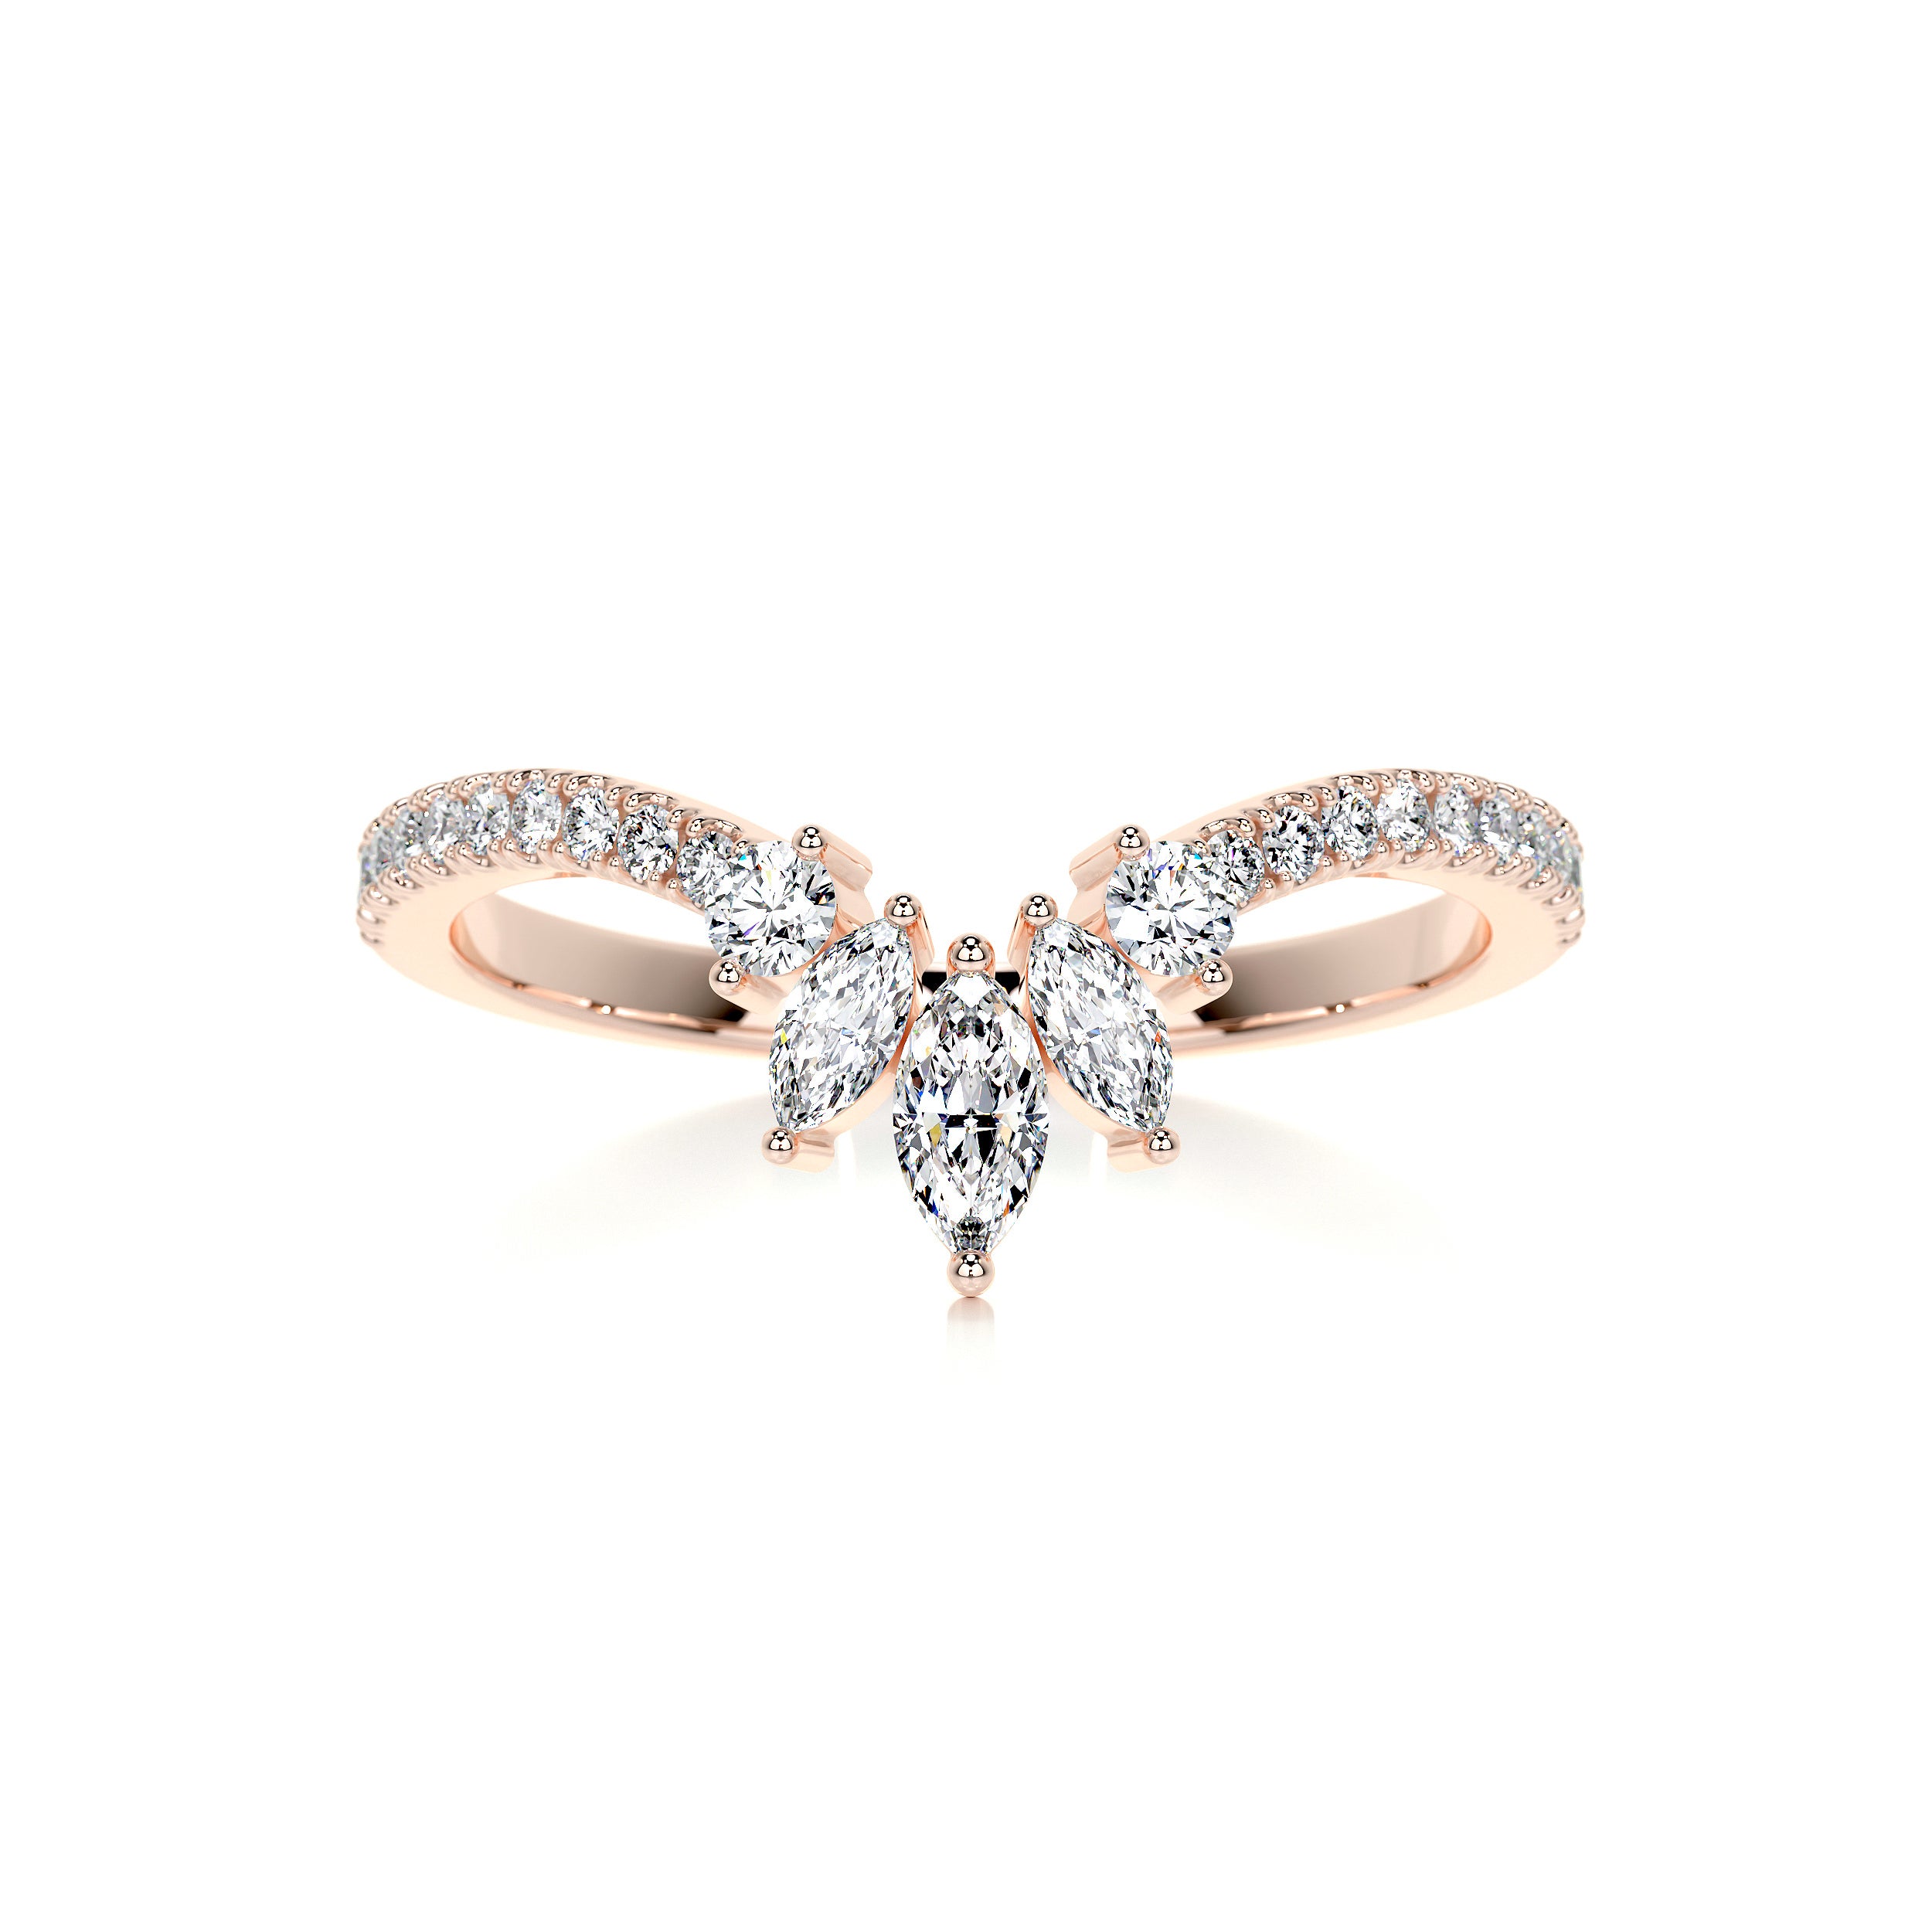 Lauren Diamond Wedding Ring   (0.30 Carat) -14K Rose Gold